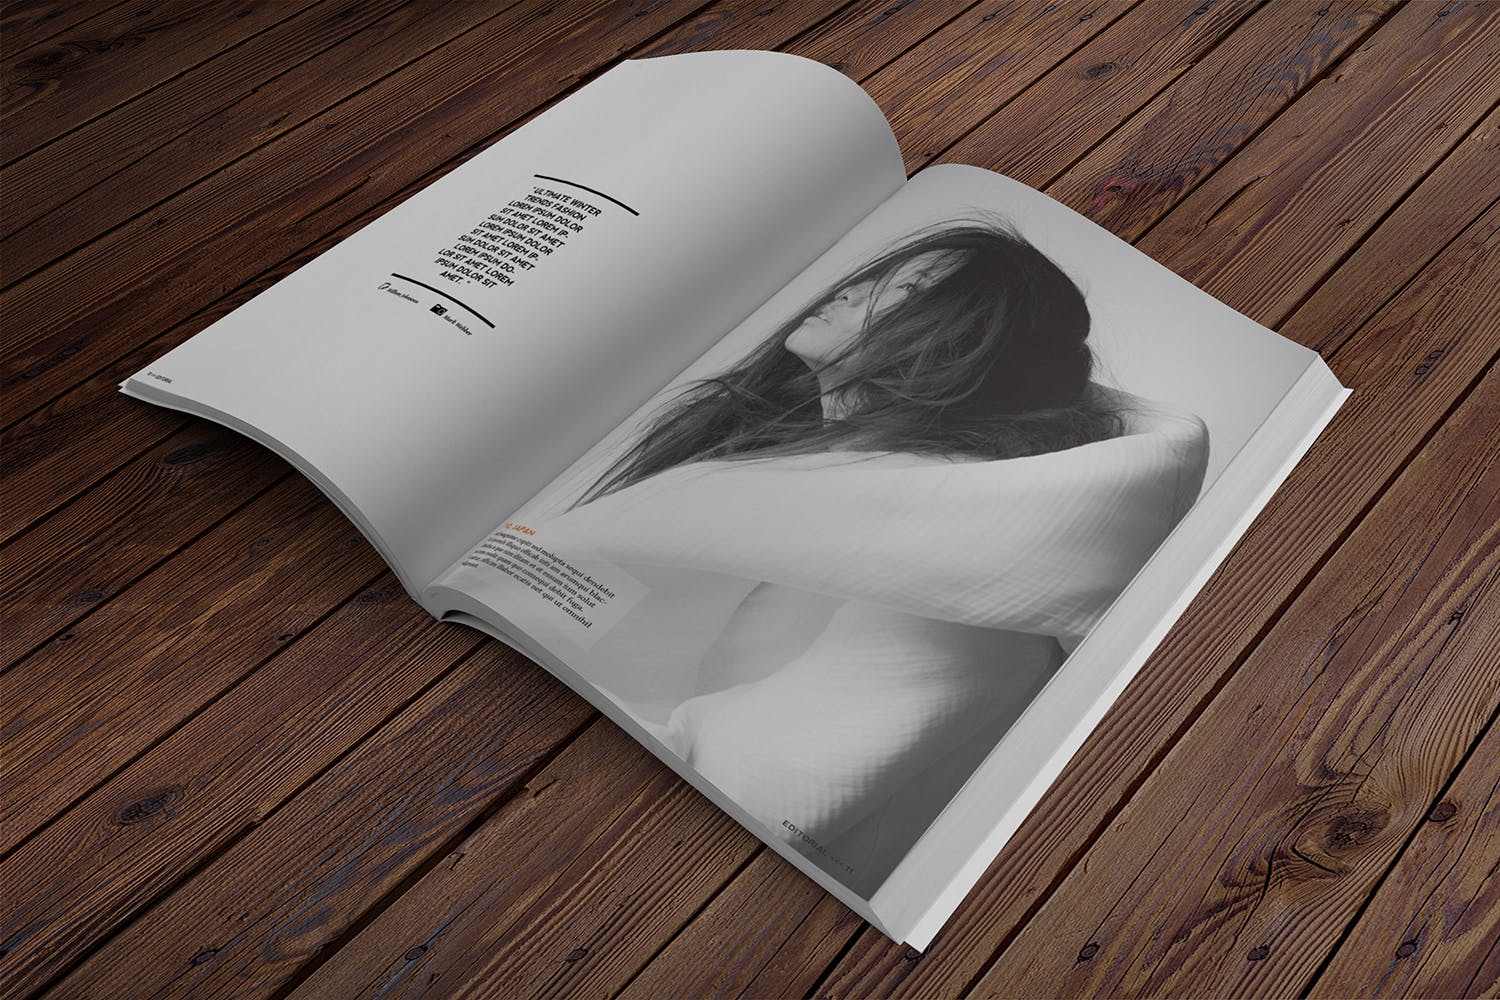 杂志内页排版设计透视图样机16图库精选 Magazine Mockup Perspective View插图(2)